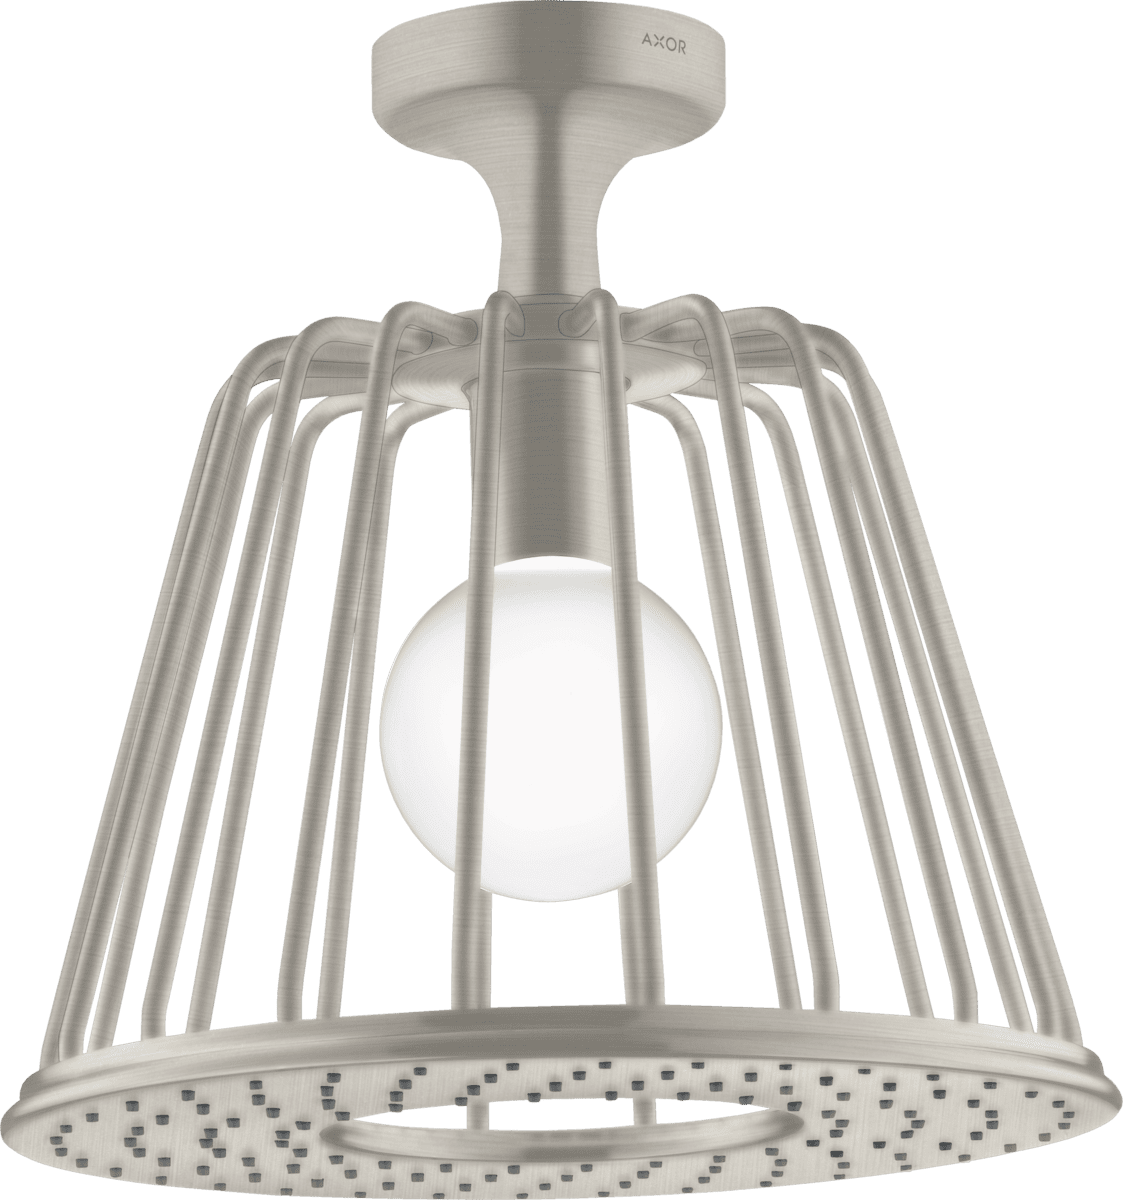 HANSGROHE AXOR LampShower/Nendo LampShower 275 1jet tavan bağlantılı #26032800 - Paslanmaz Çelik Optik resmi